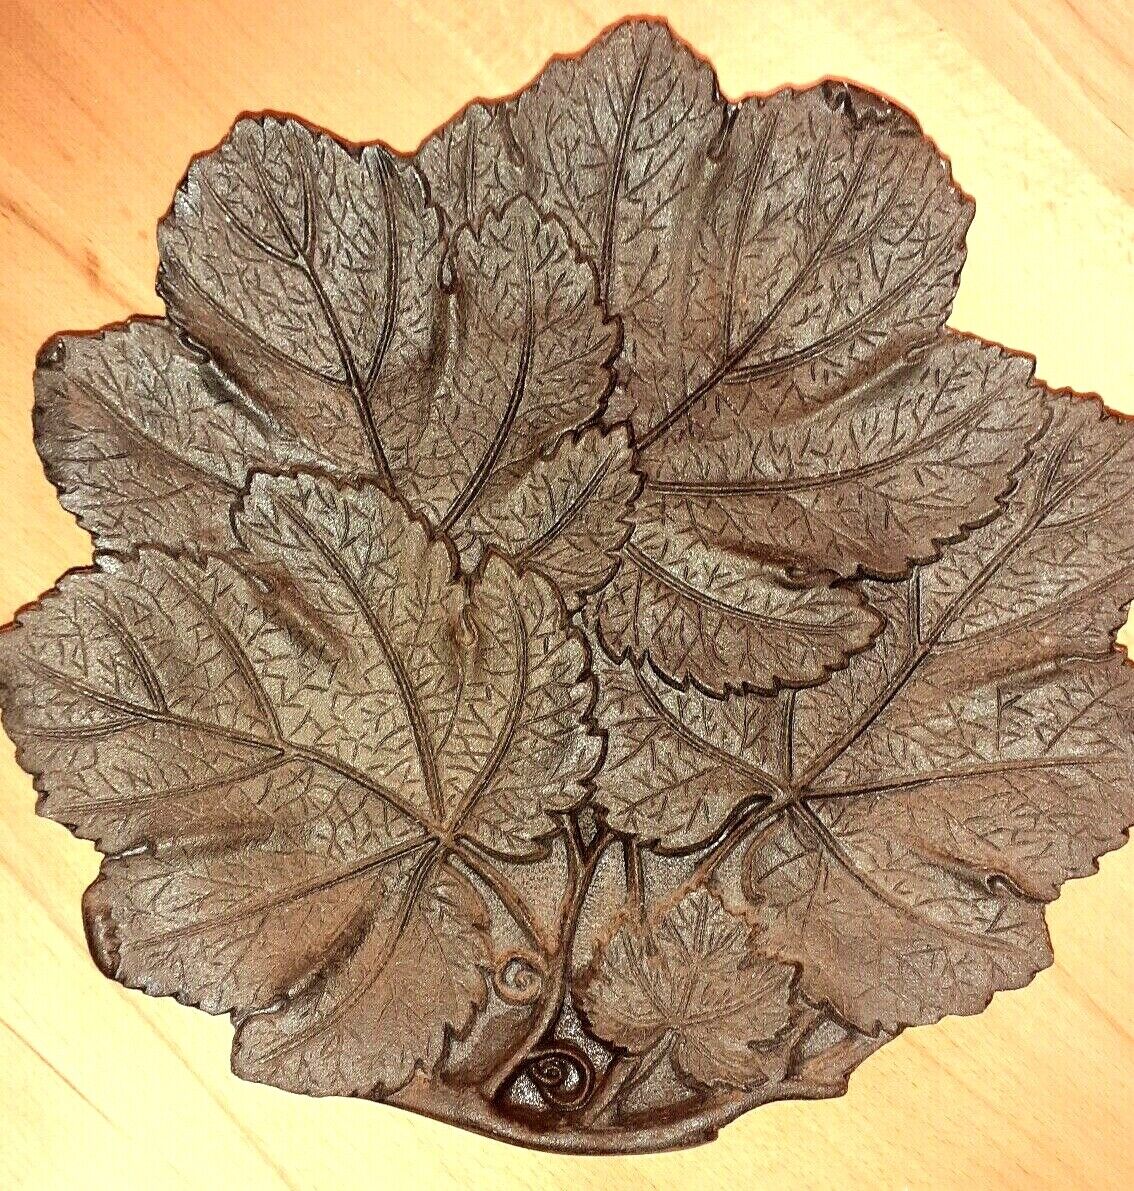 Żeliwna miska liściowa sygnowana Ahlmann Rendsburg, liście Carlshütte Büdelsdorf-pokaż oryginalną nazwę Sprzedaż krajowa